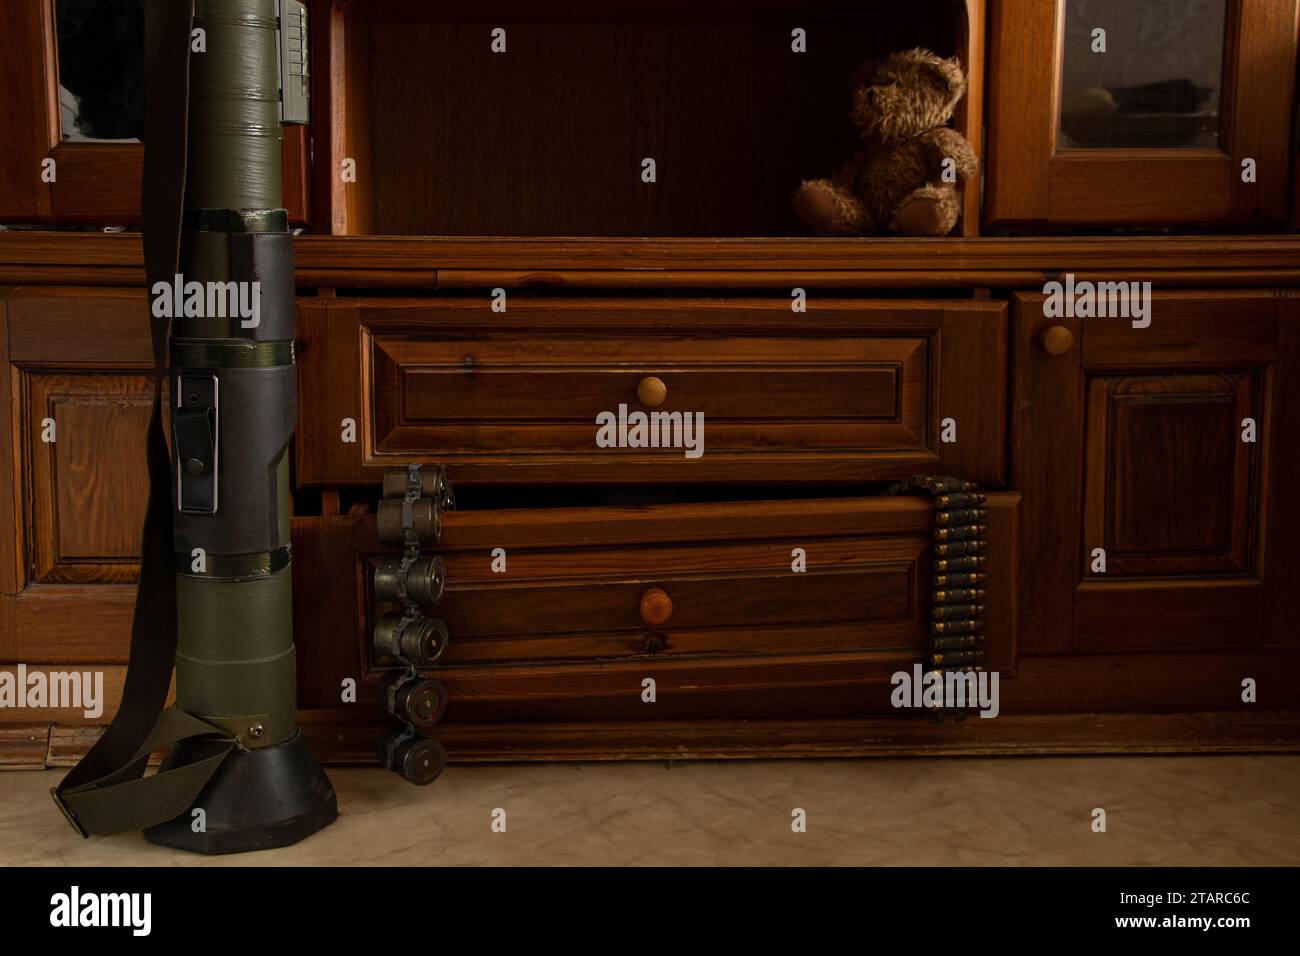 Un lanciagranate si trova sul pavimento, e le cinture di mitragliatrici con le cartucce sono appese a una scatola in un appartamento in Ucraina, le armi sono conservate in una casa Foto Stock